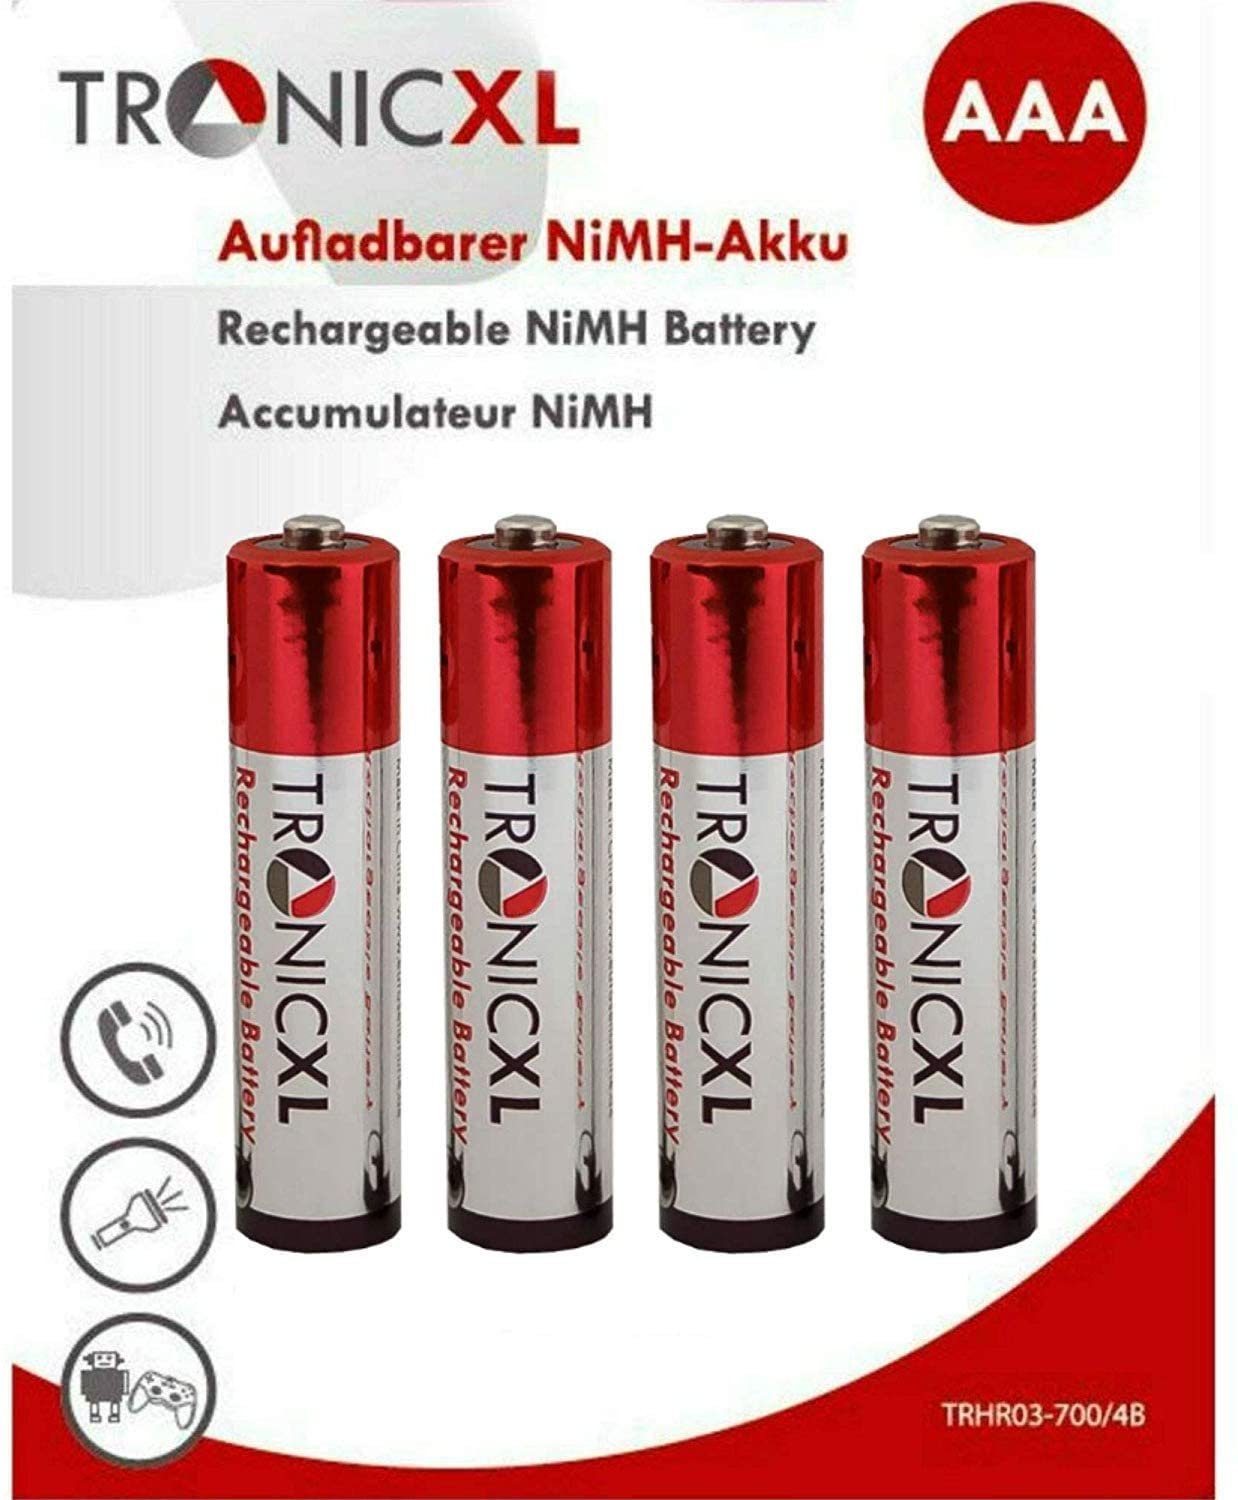 TronicXL Akkus AAA 40 Akku Entfernungsmesser Laser DLE DLE Bosch St) Batterie, (4 für 70